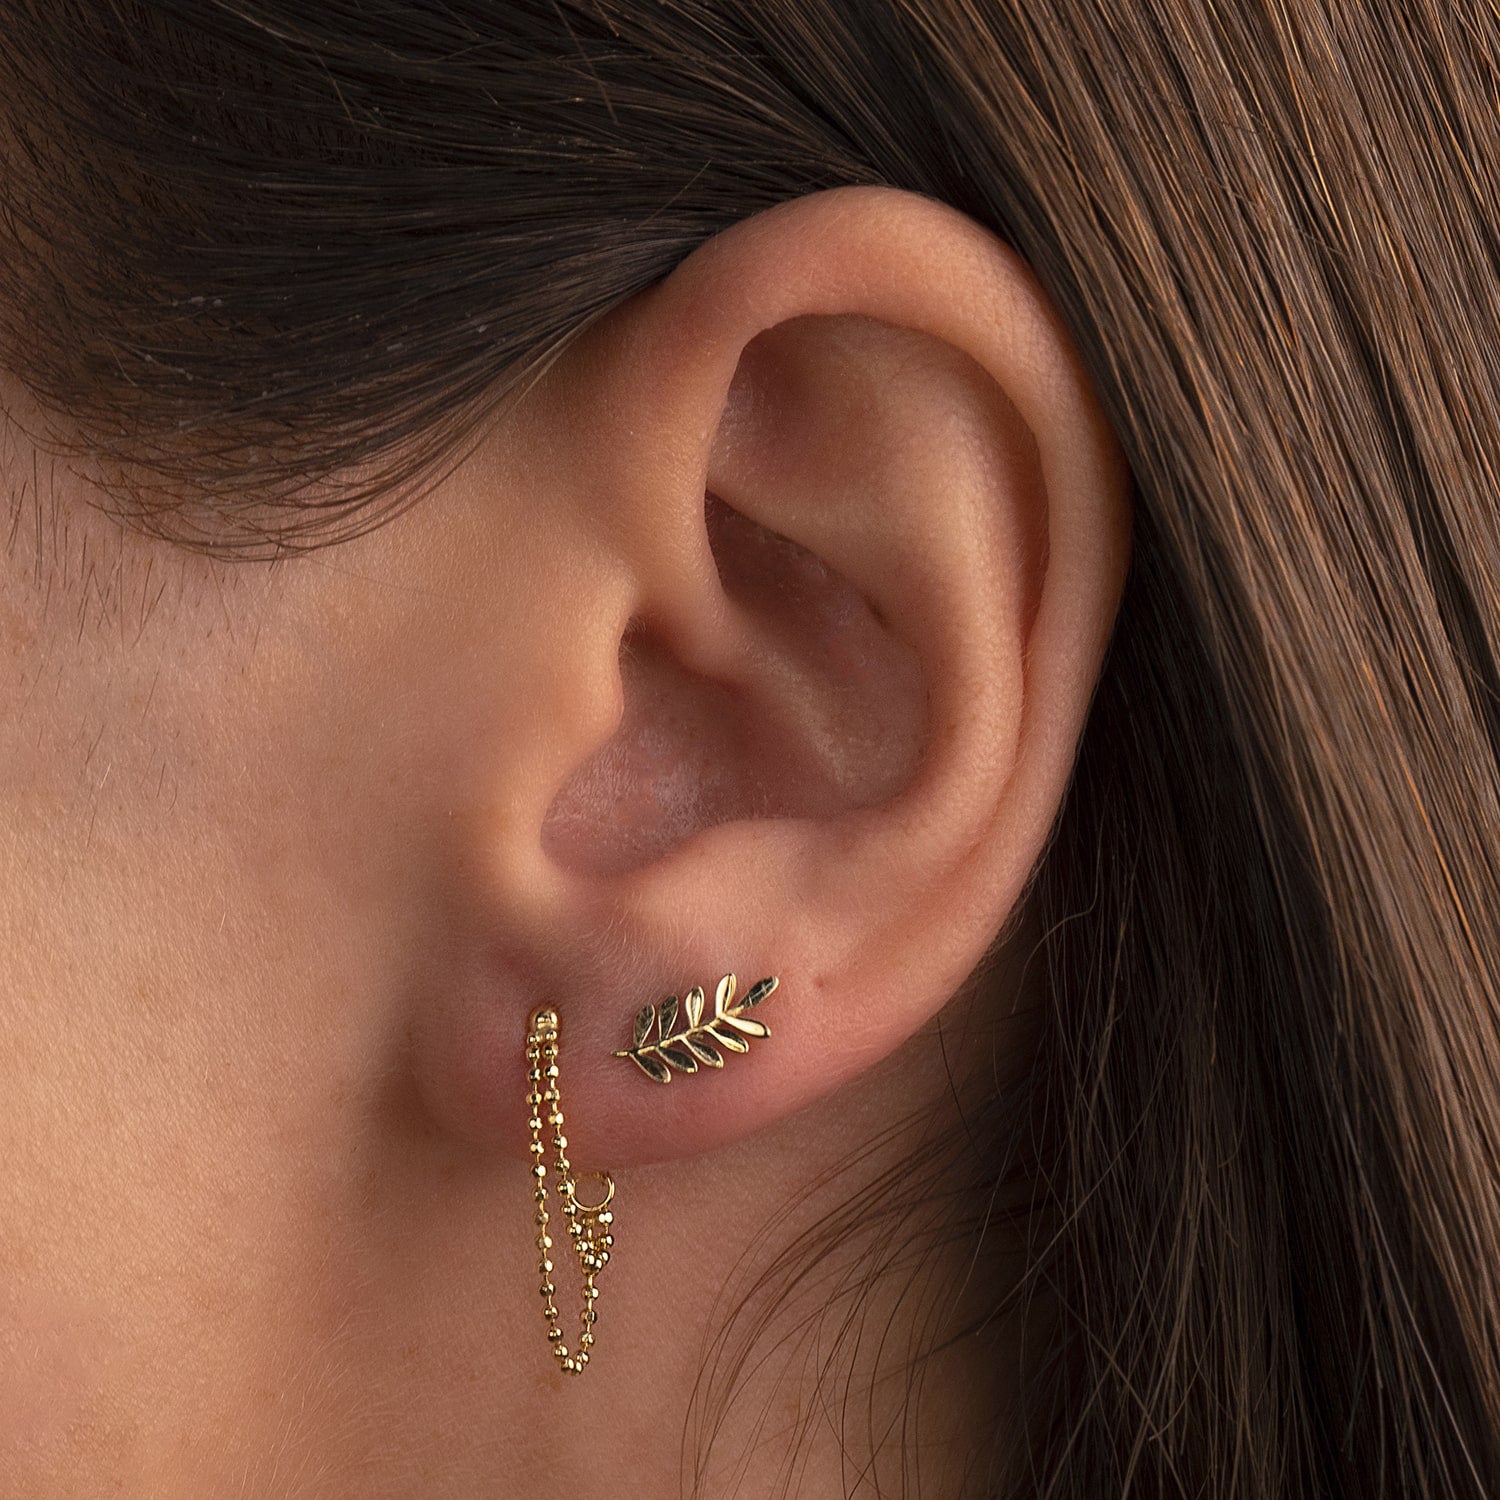 Least to Most Painful Ear Piercings: Pain Ranking – Impuria Ear Piercing  Jewelry